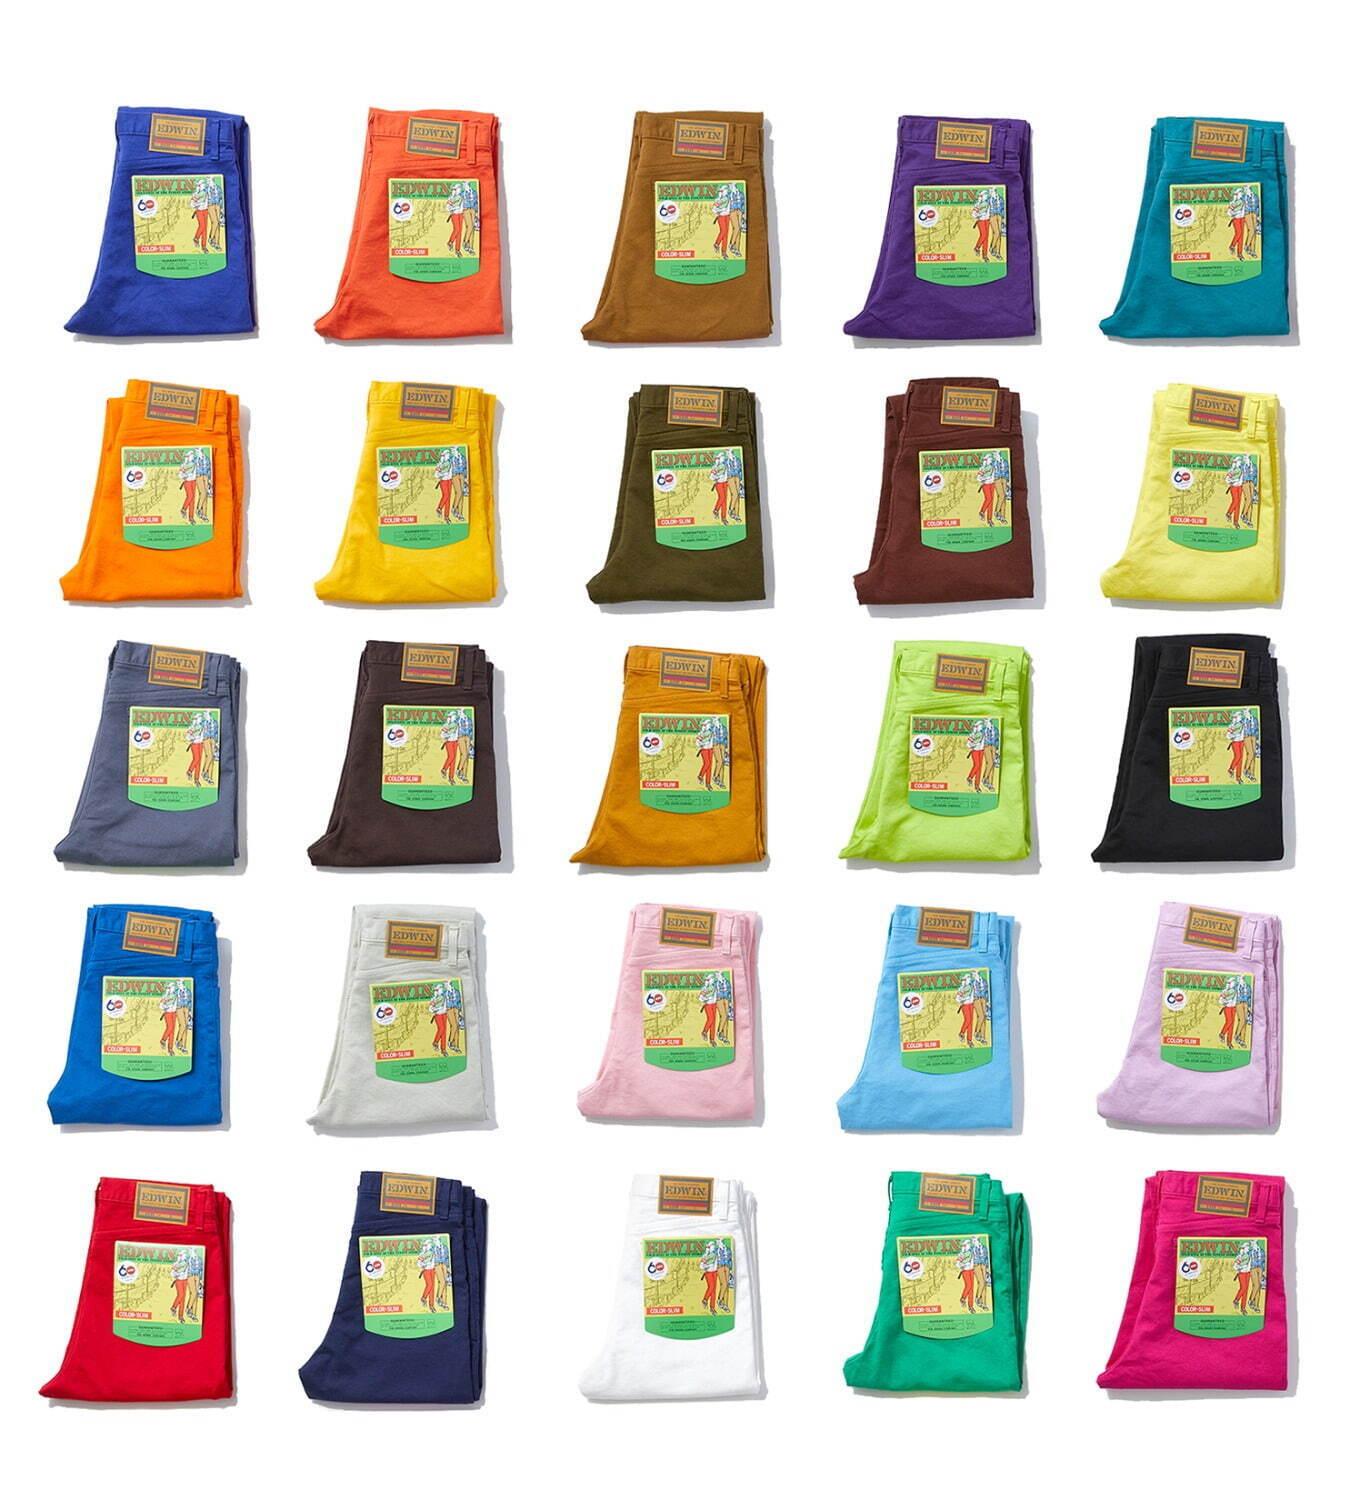 エドウイン全25色のパンツ「カラースリム」各色60本限定で復刻 コピー